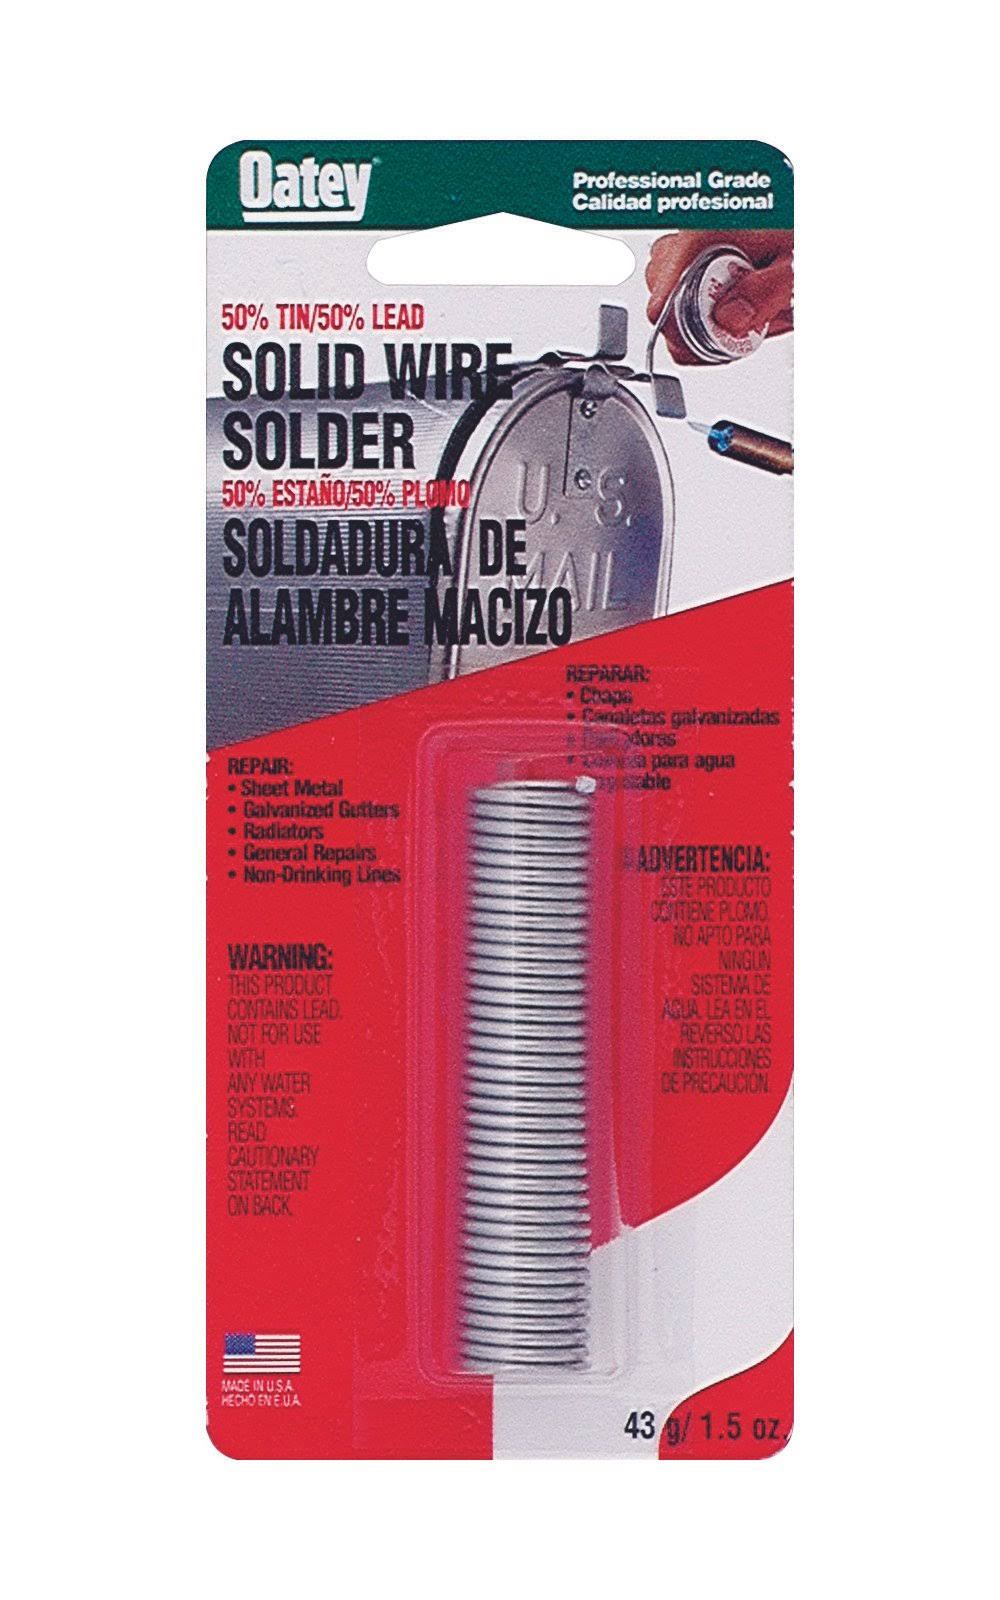 Oatey 53010 Solder Wire - 50/50, 1oz